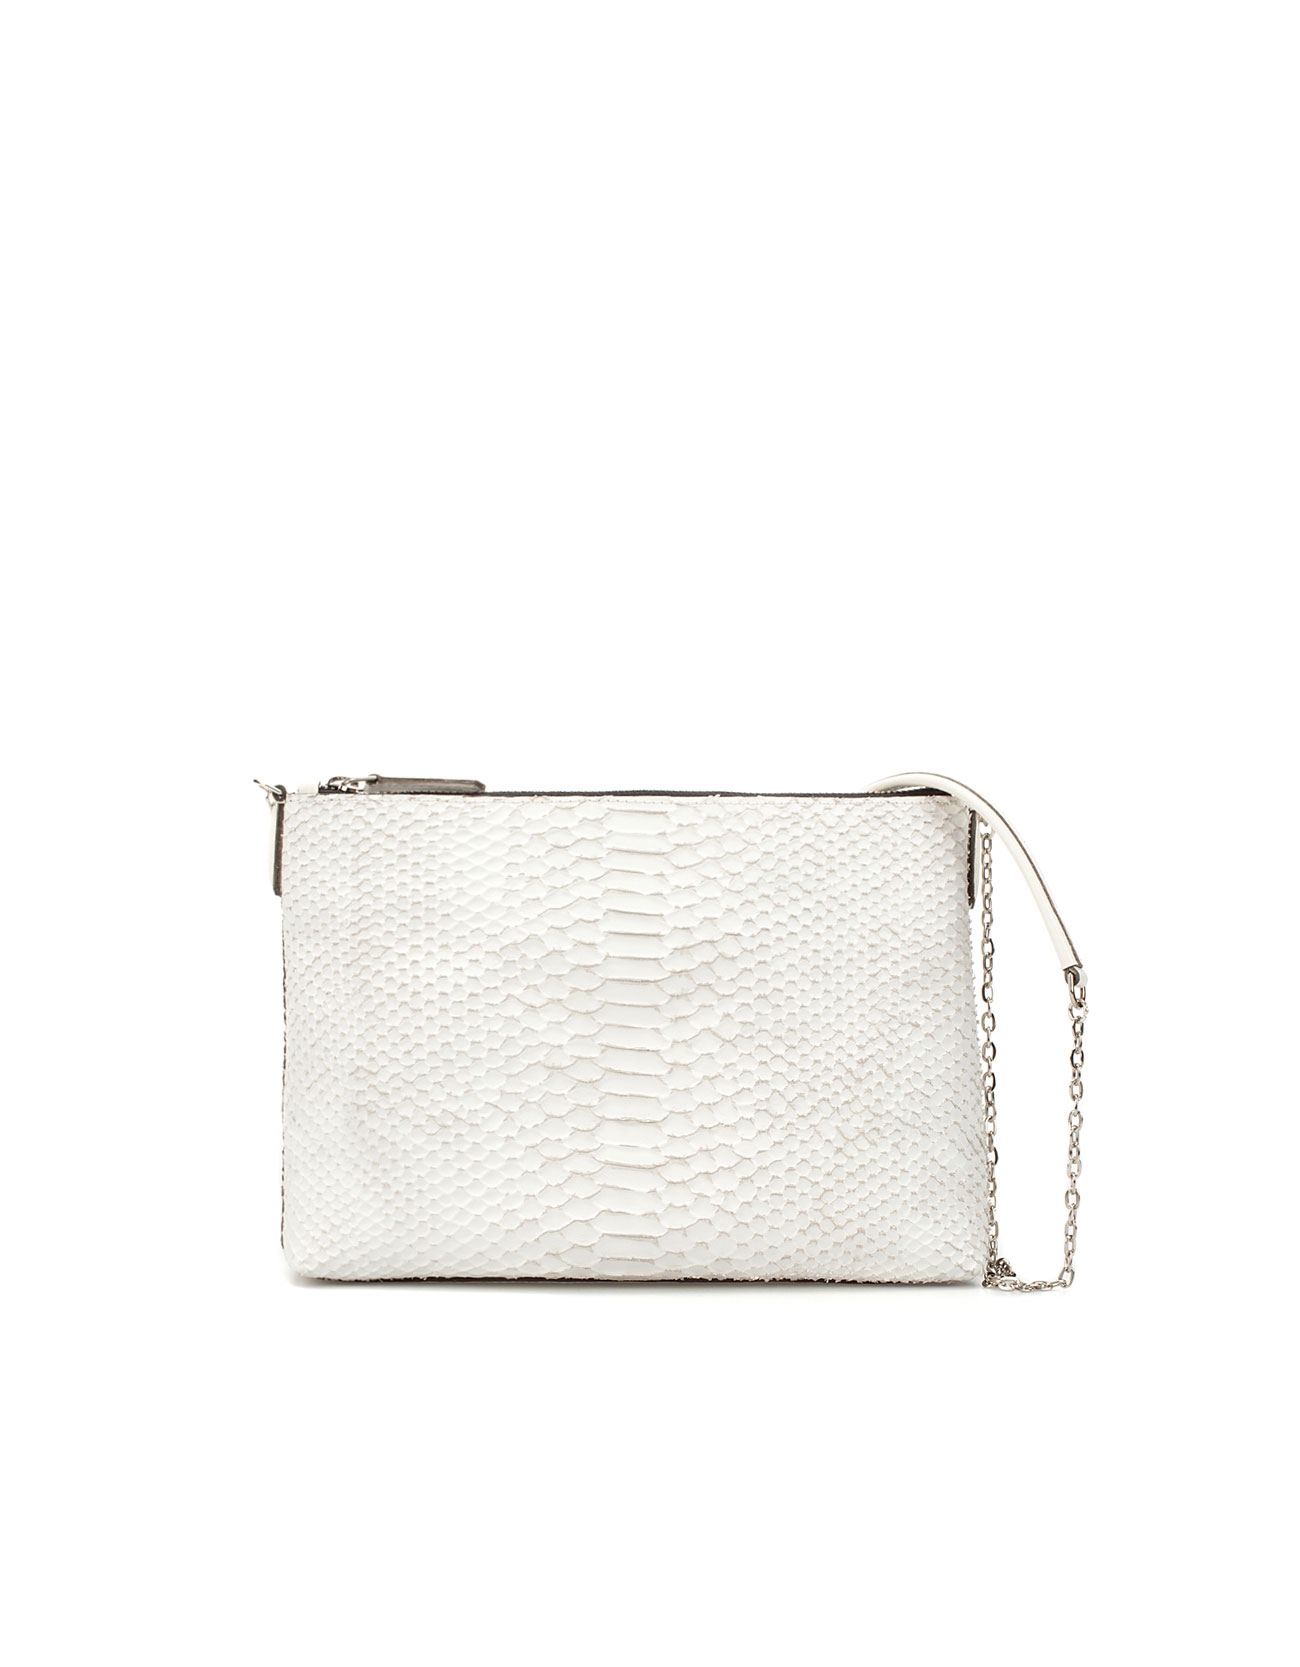 Zara Snakeskin Messenger Bag in White | Lyst